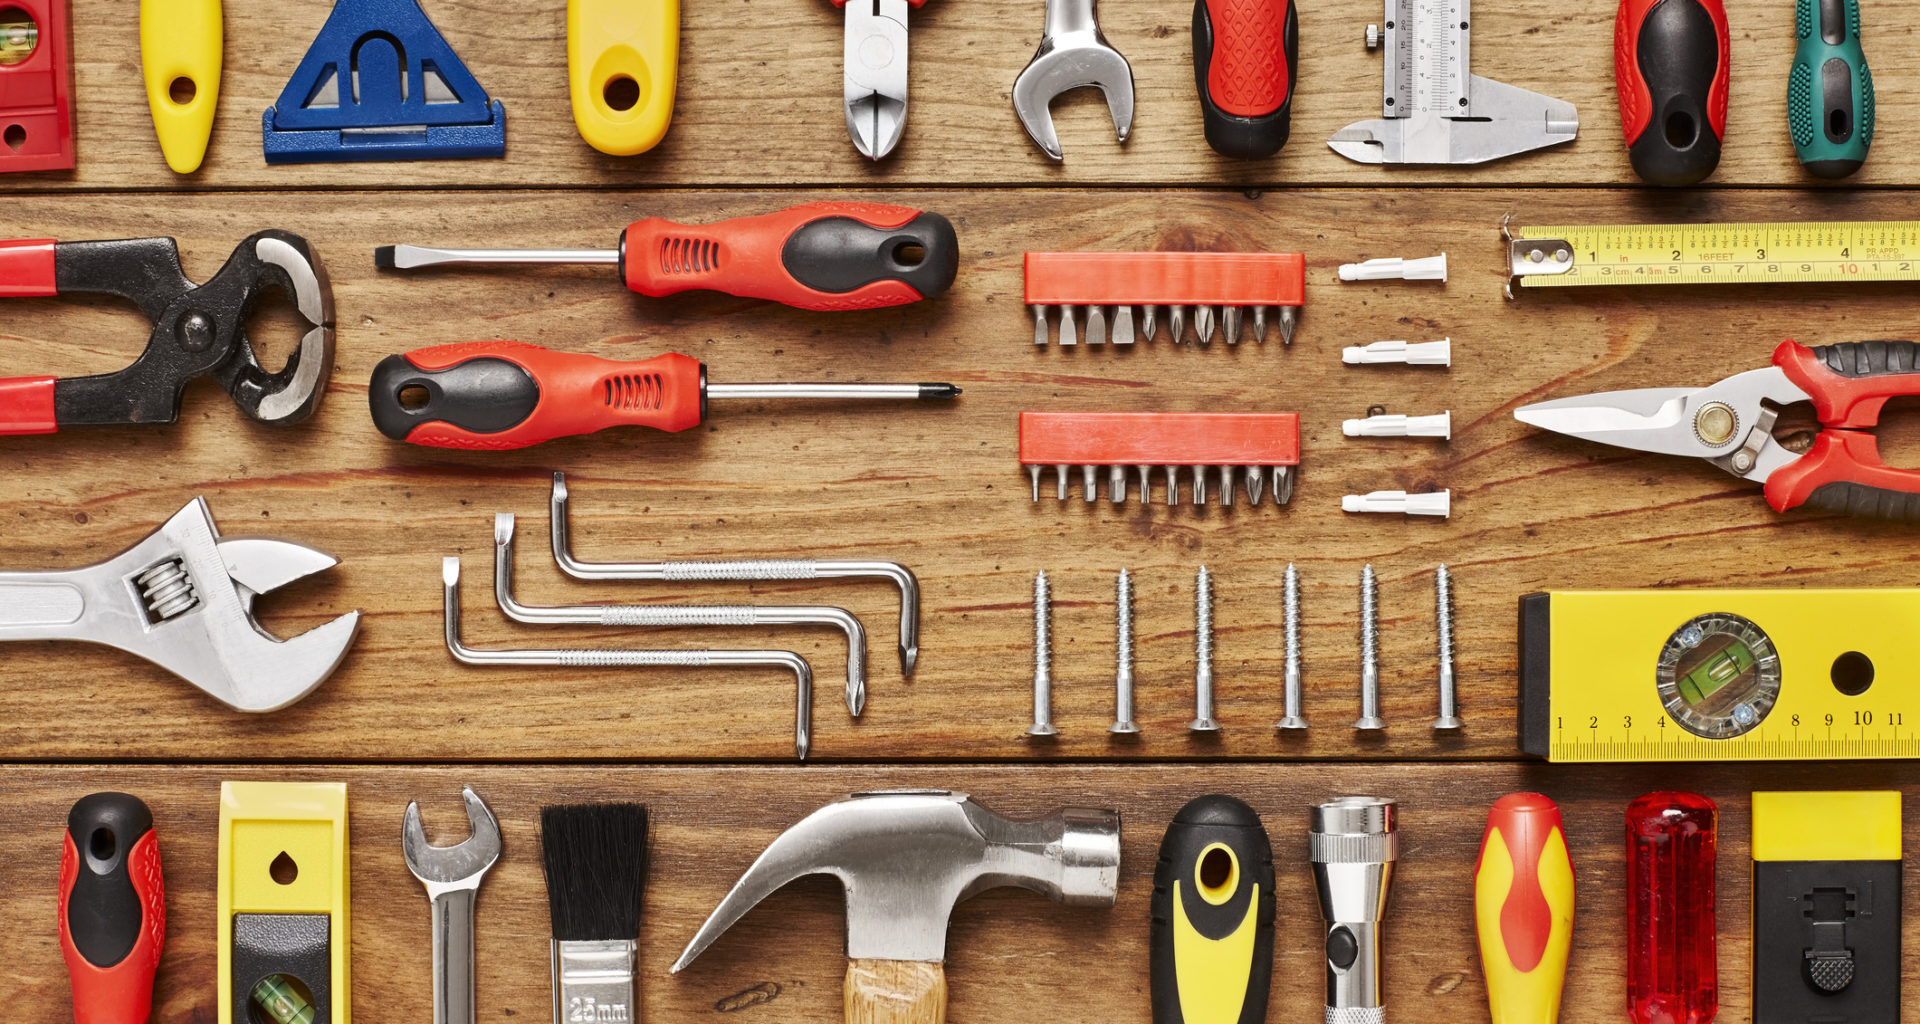 Industrial tools. Строительные инструменты. Инструменты для стройки. Инструменты для истройка. Ручной строительный инструмент.